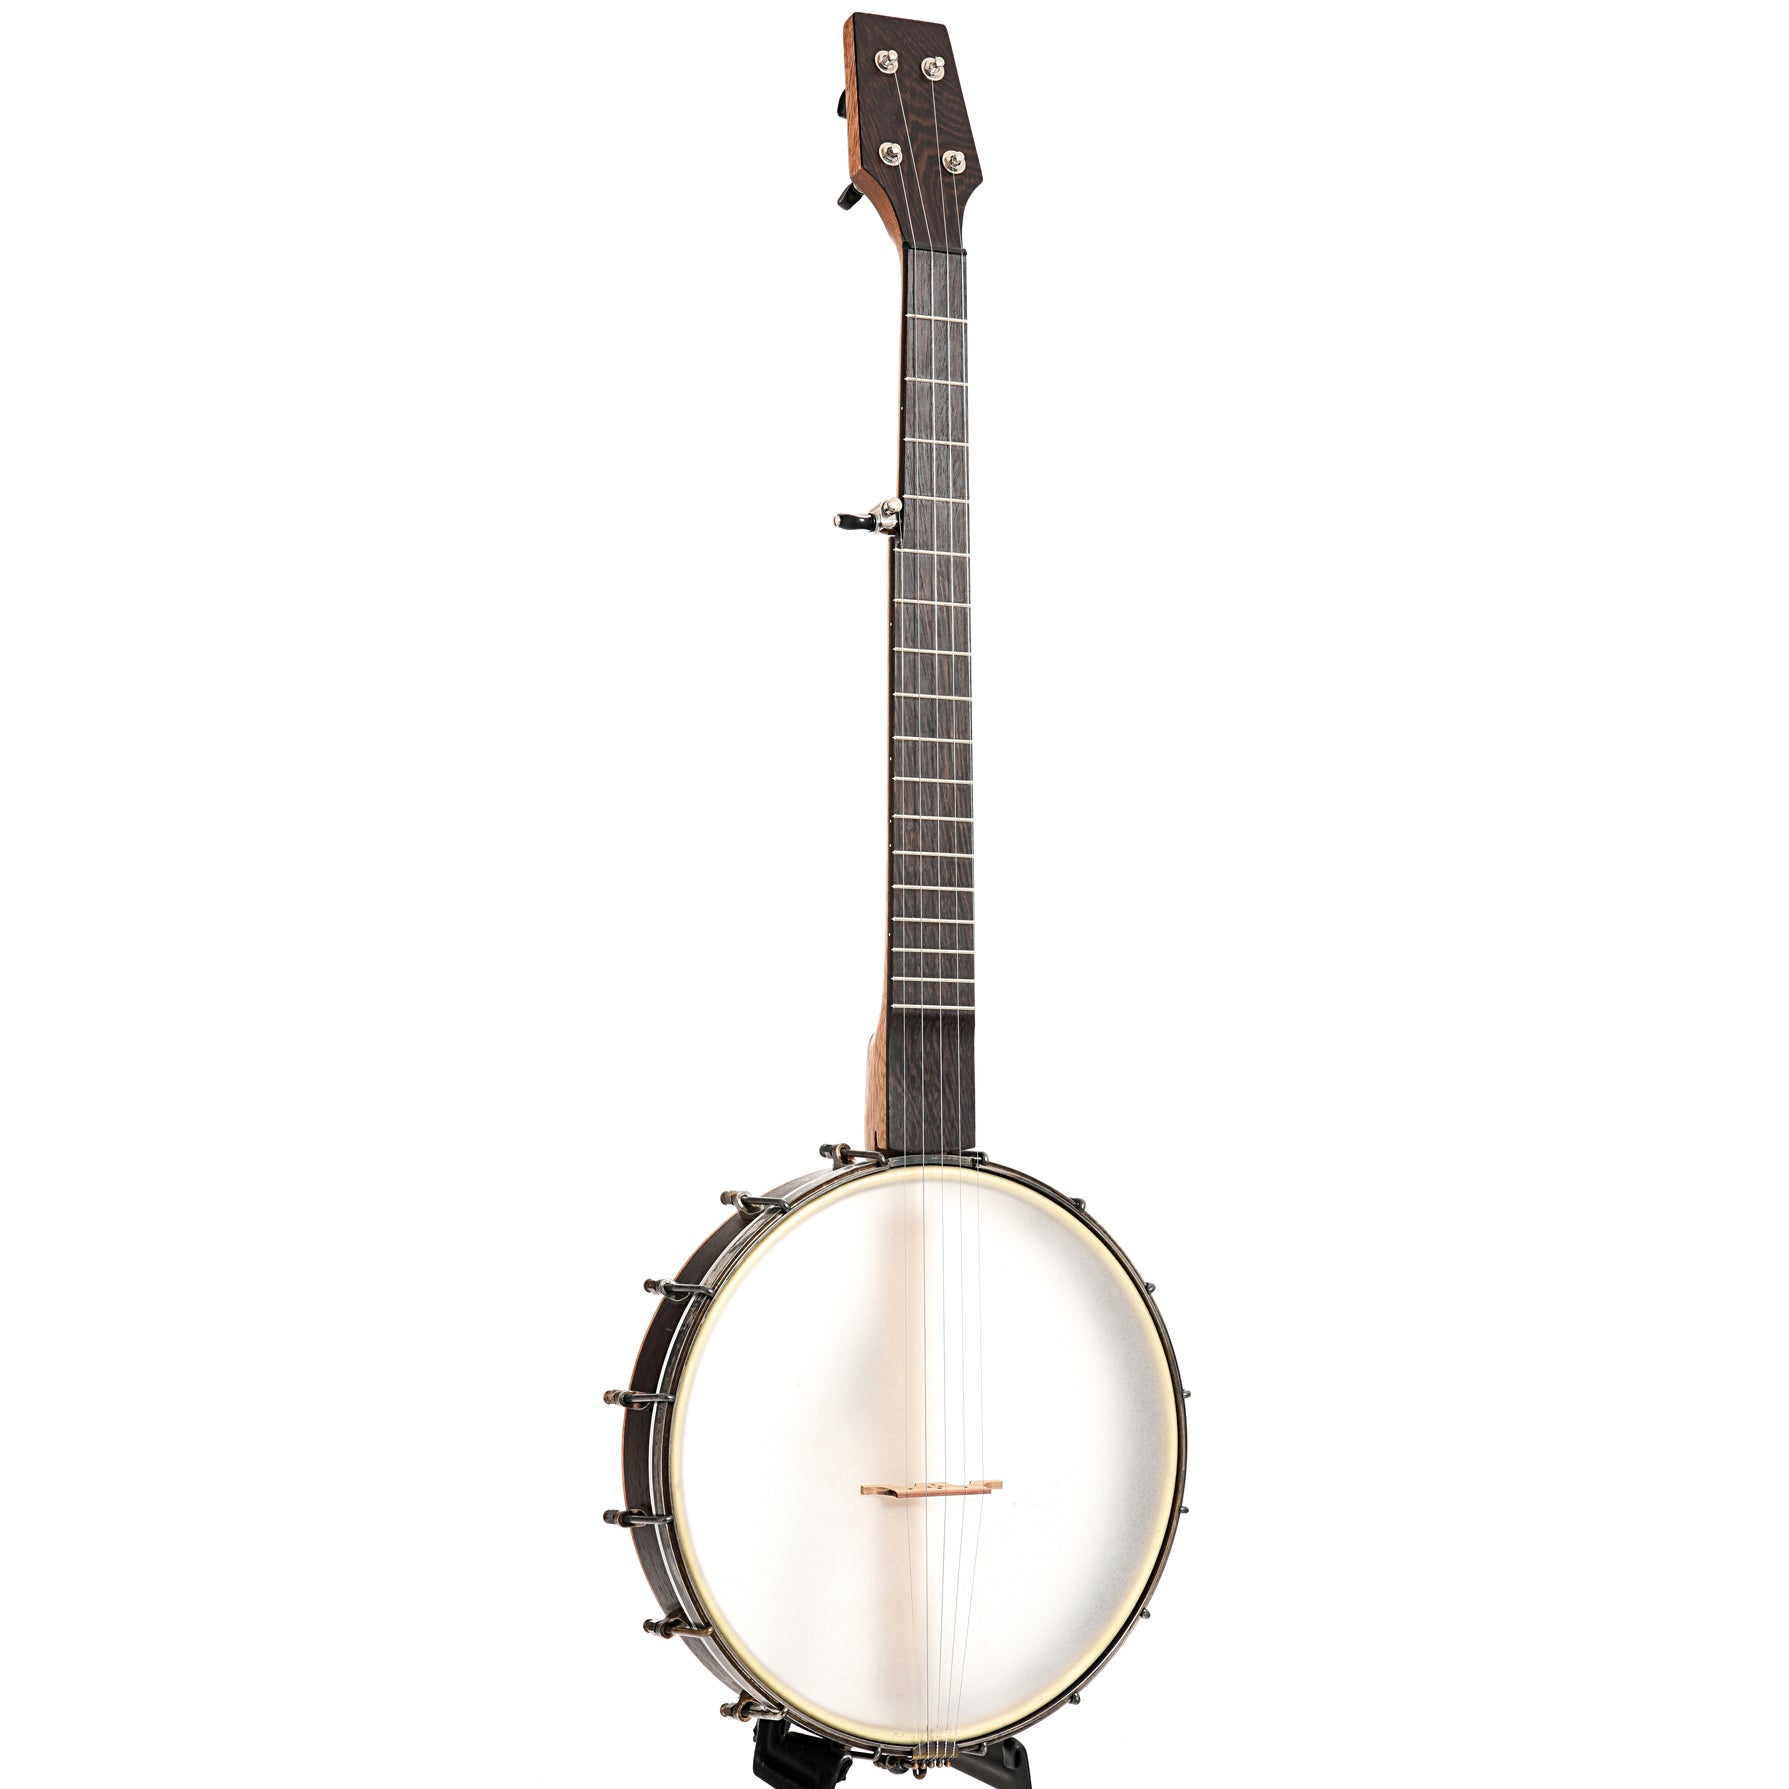 Image 2 of Dogwood Banjo Co. 12" Openback Banjo, No. 189, with Gigbag - SKU# DW189 : Product Type Open Back Banjos : Elderly Instruments